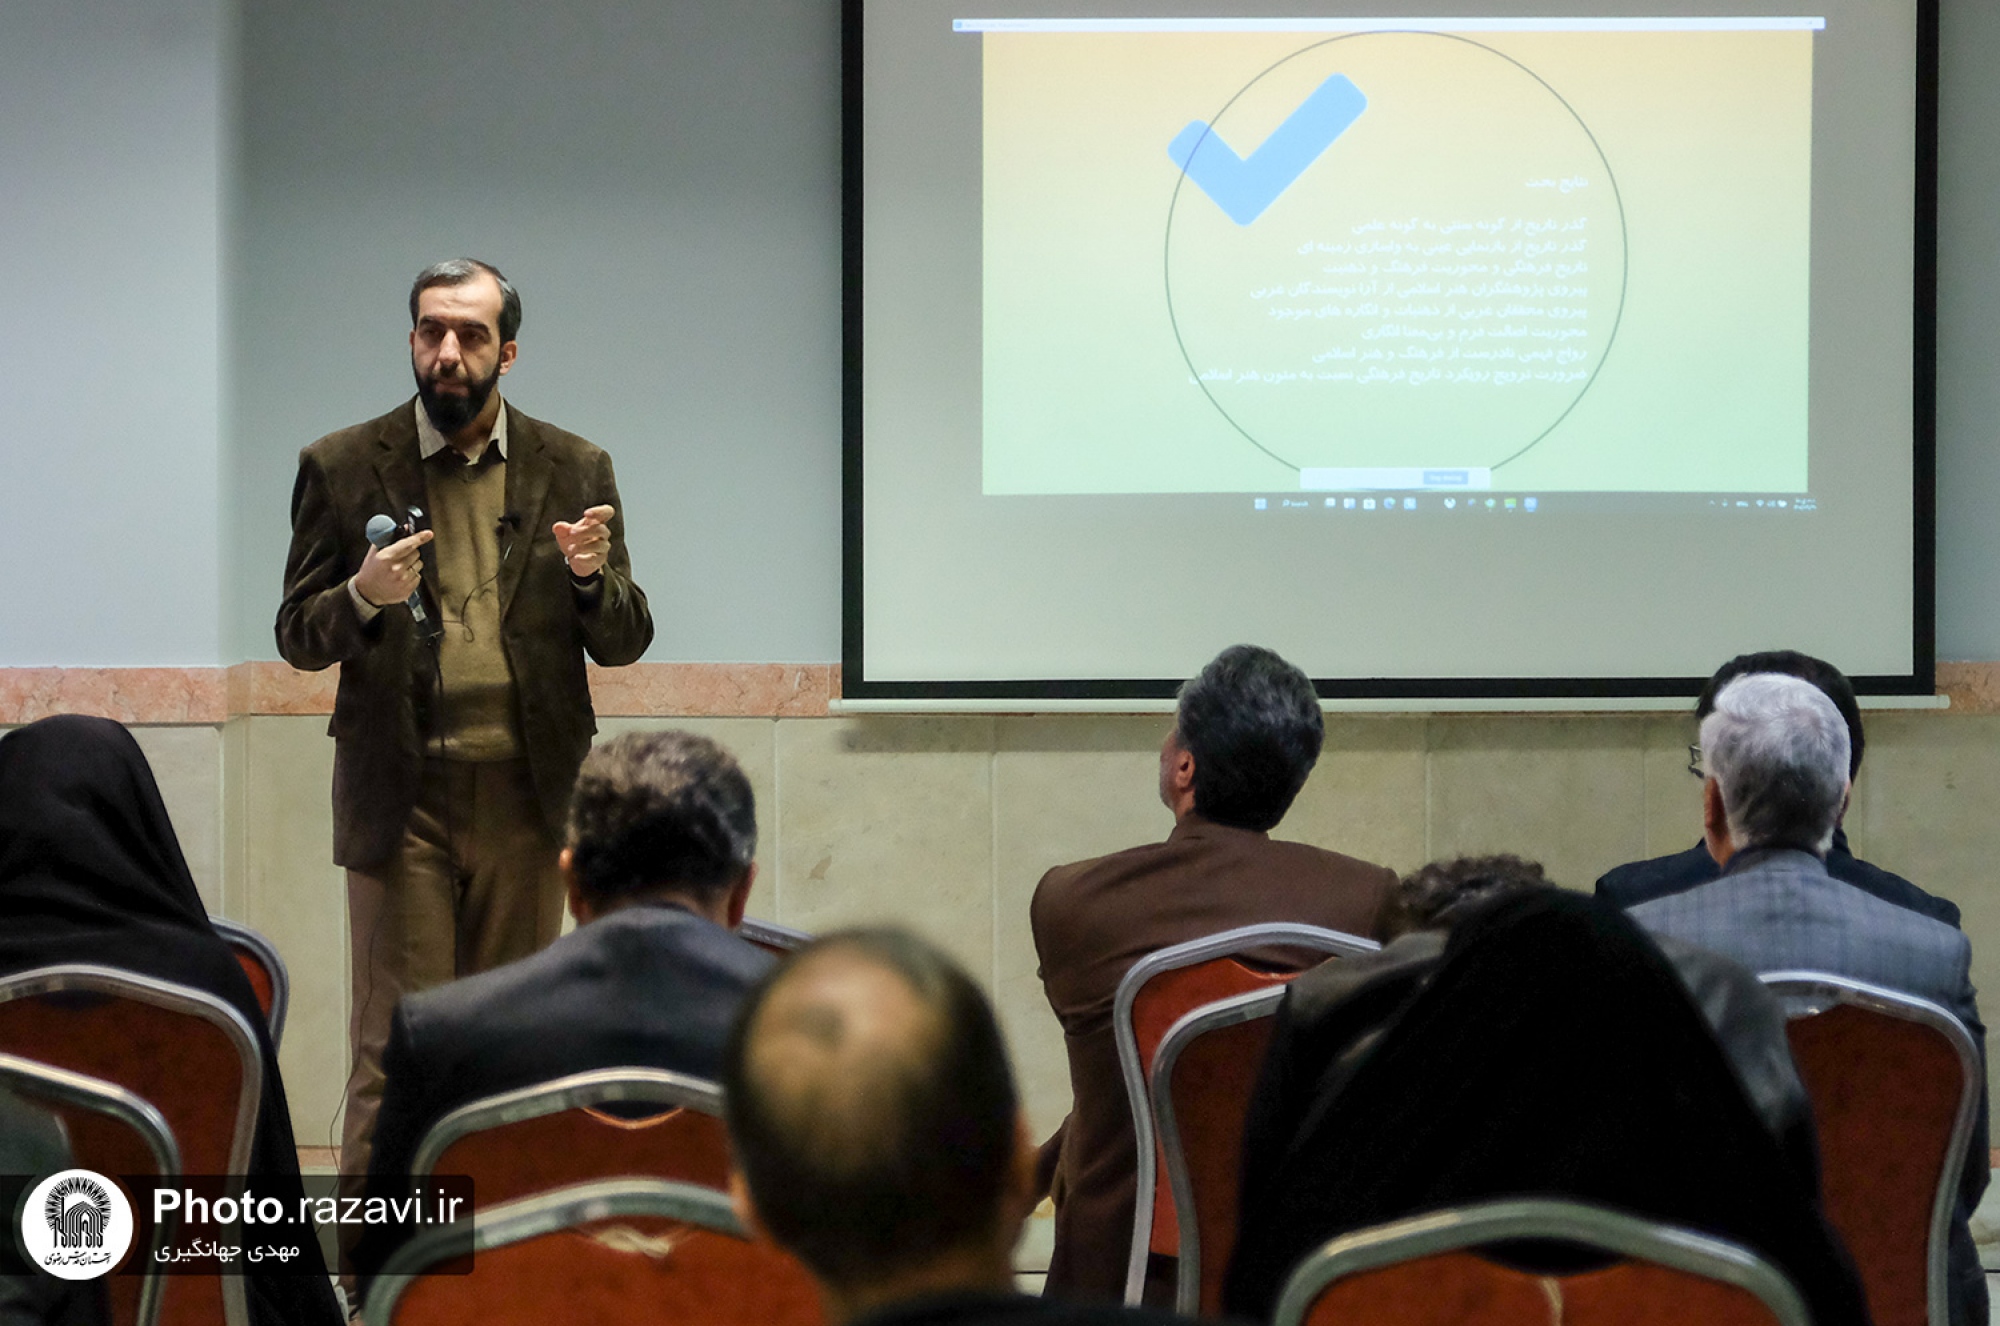 نشست تخصصی رویکرد تاریخ فرهنگی در پژوهش هنر اسلامی